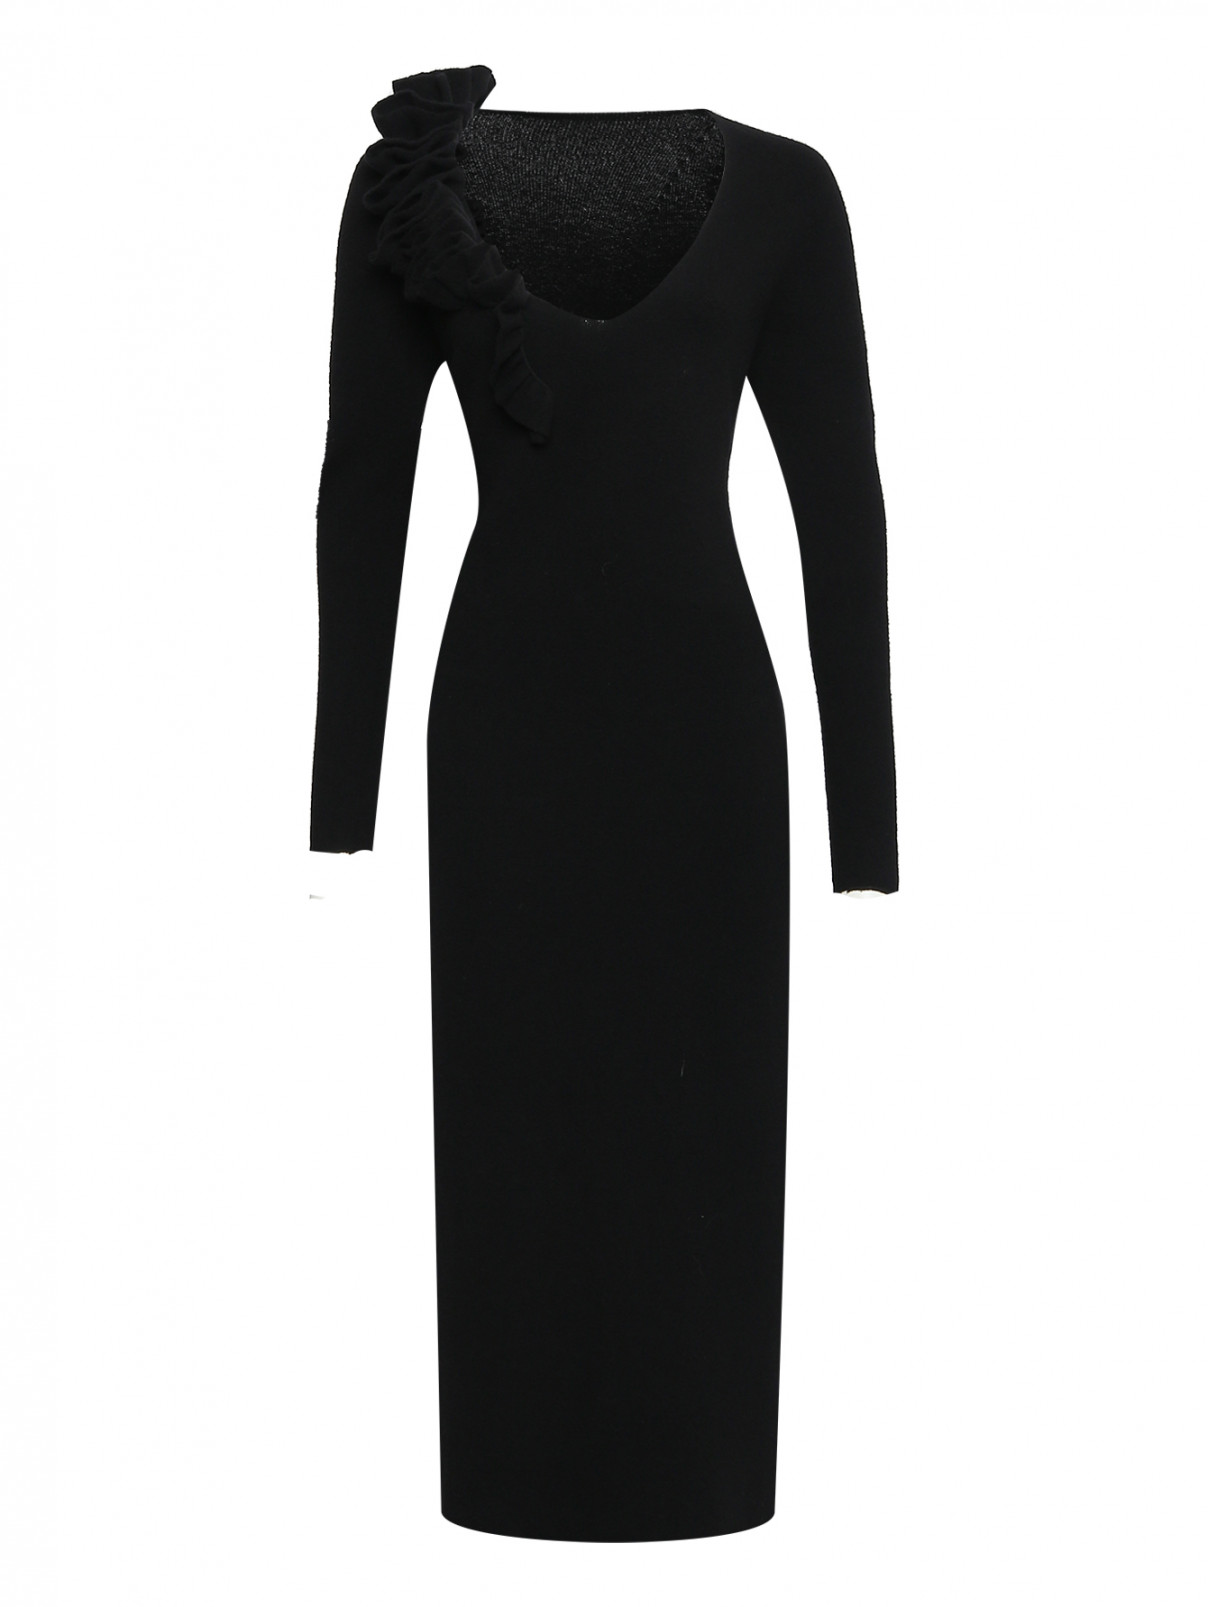 Платье из шерсти и кашемира с рюшами Liviana Conti  –  Общий вид  – Цвет:  Черный